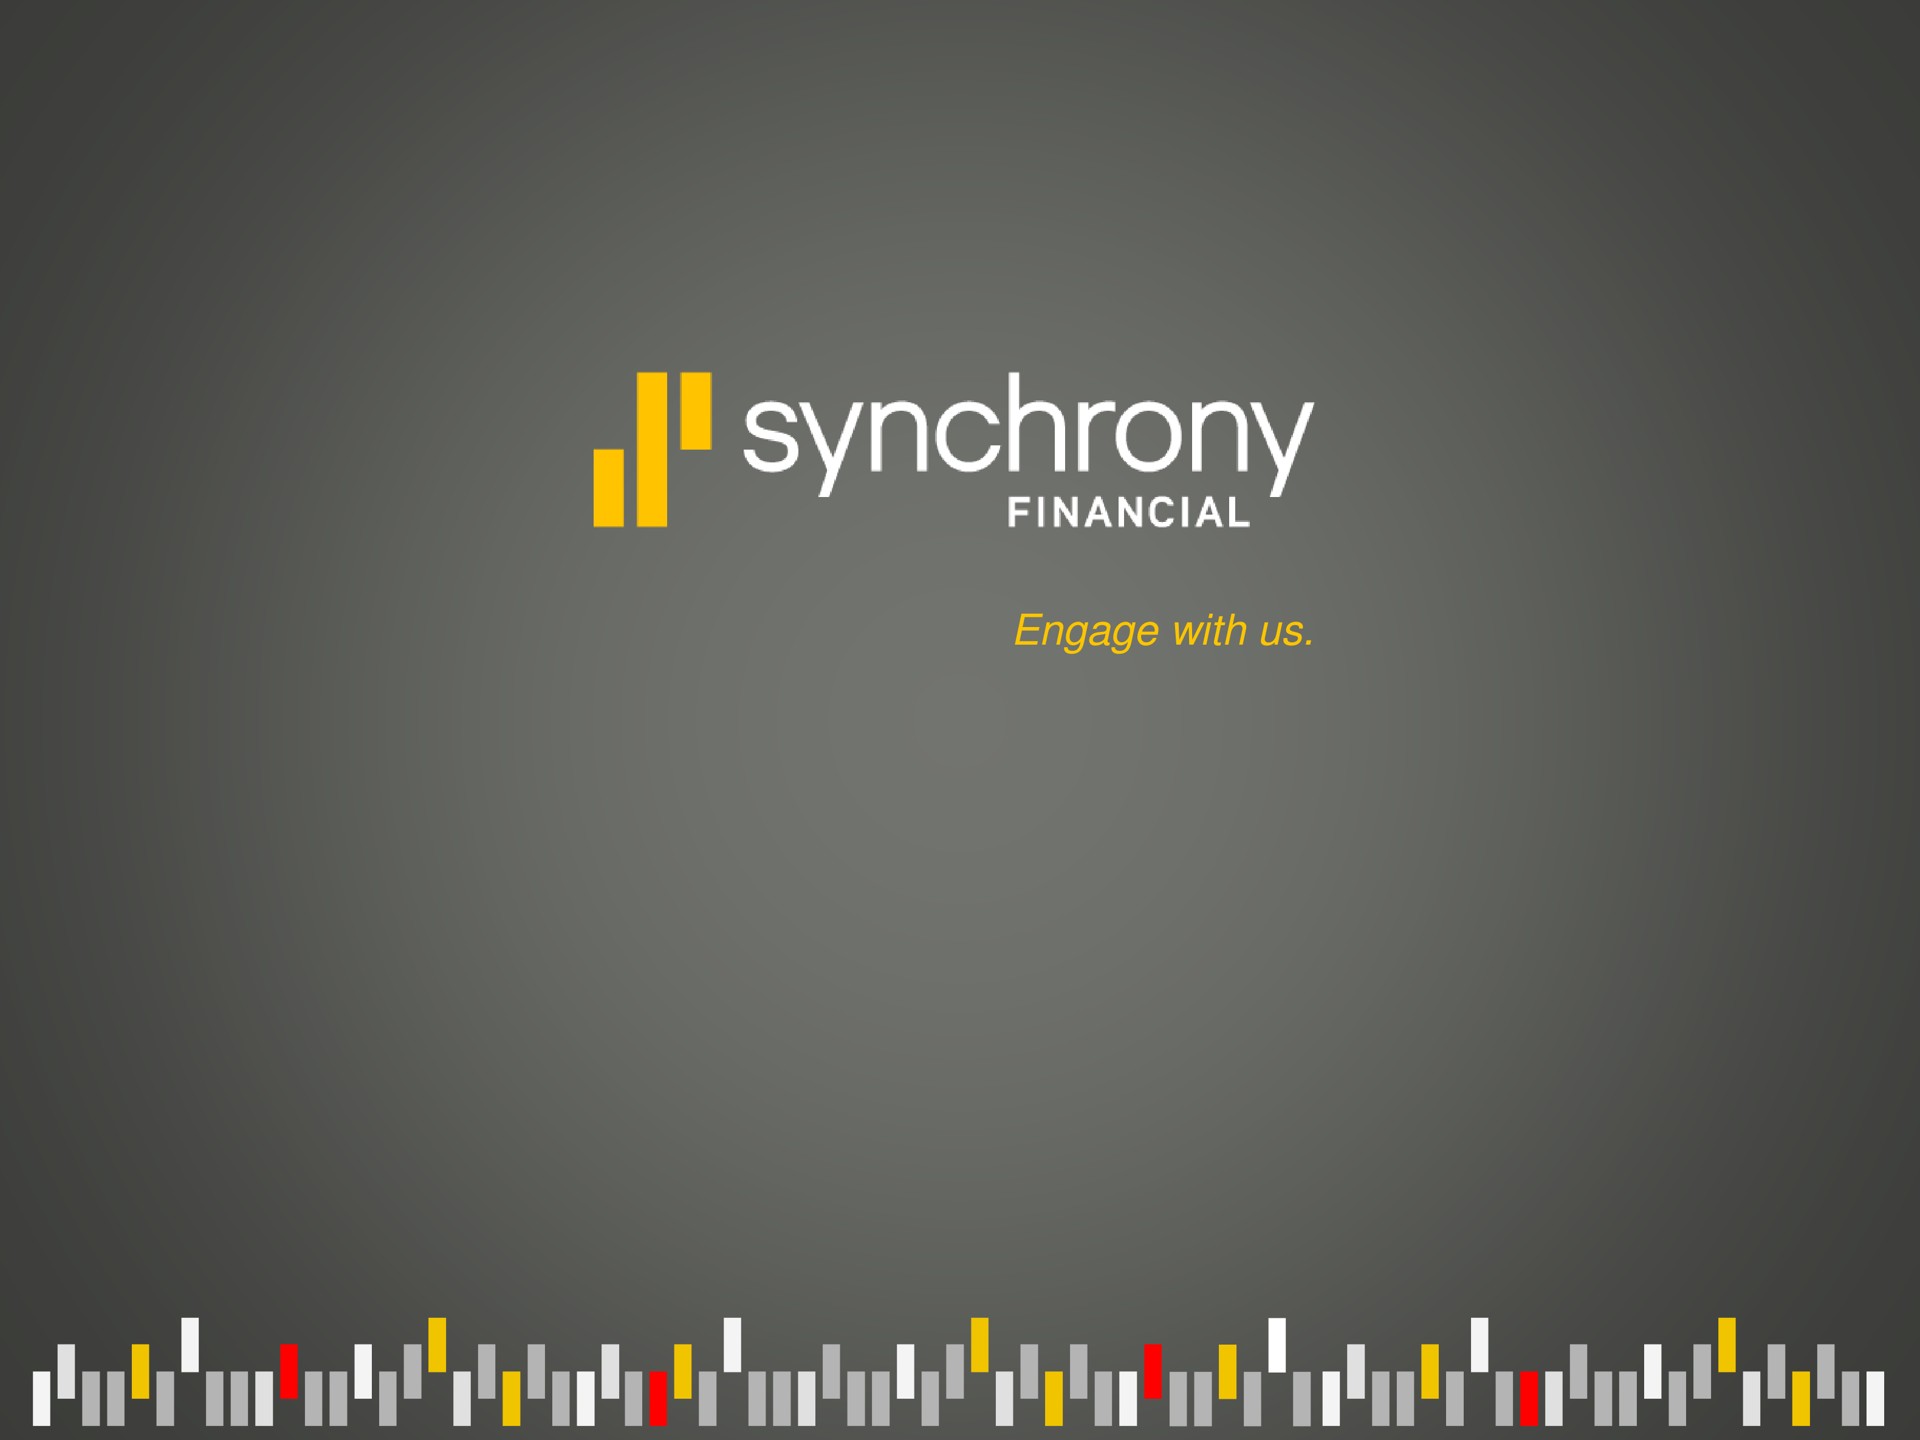 synchrony financial | Synchrony Financial